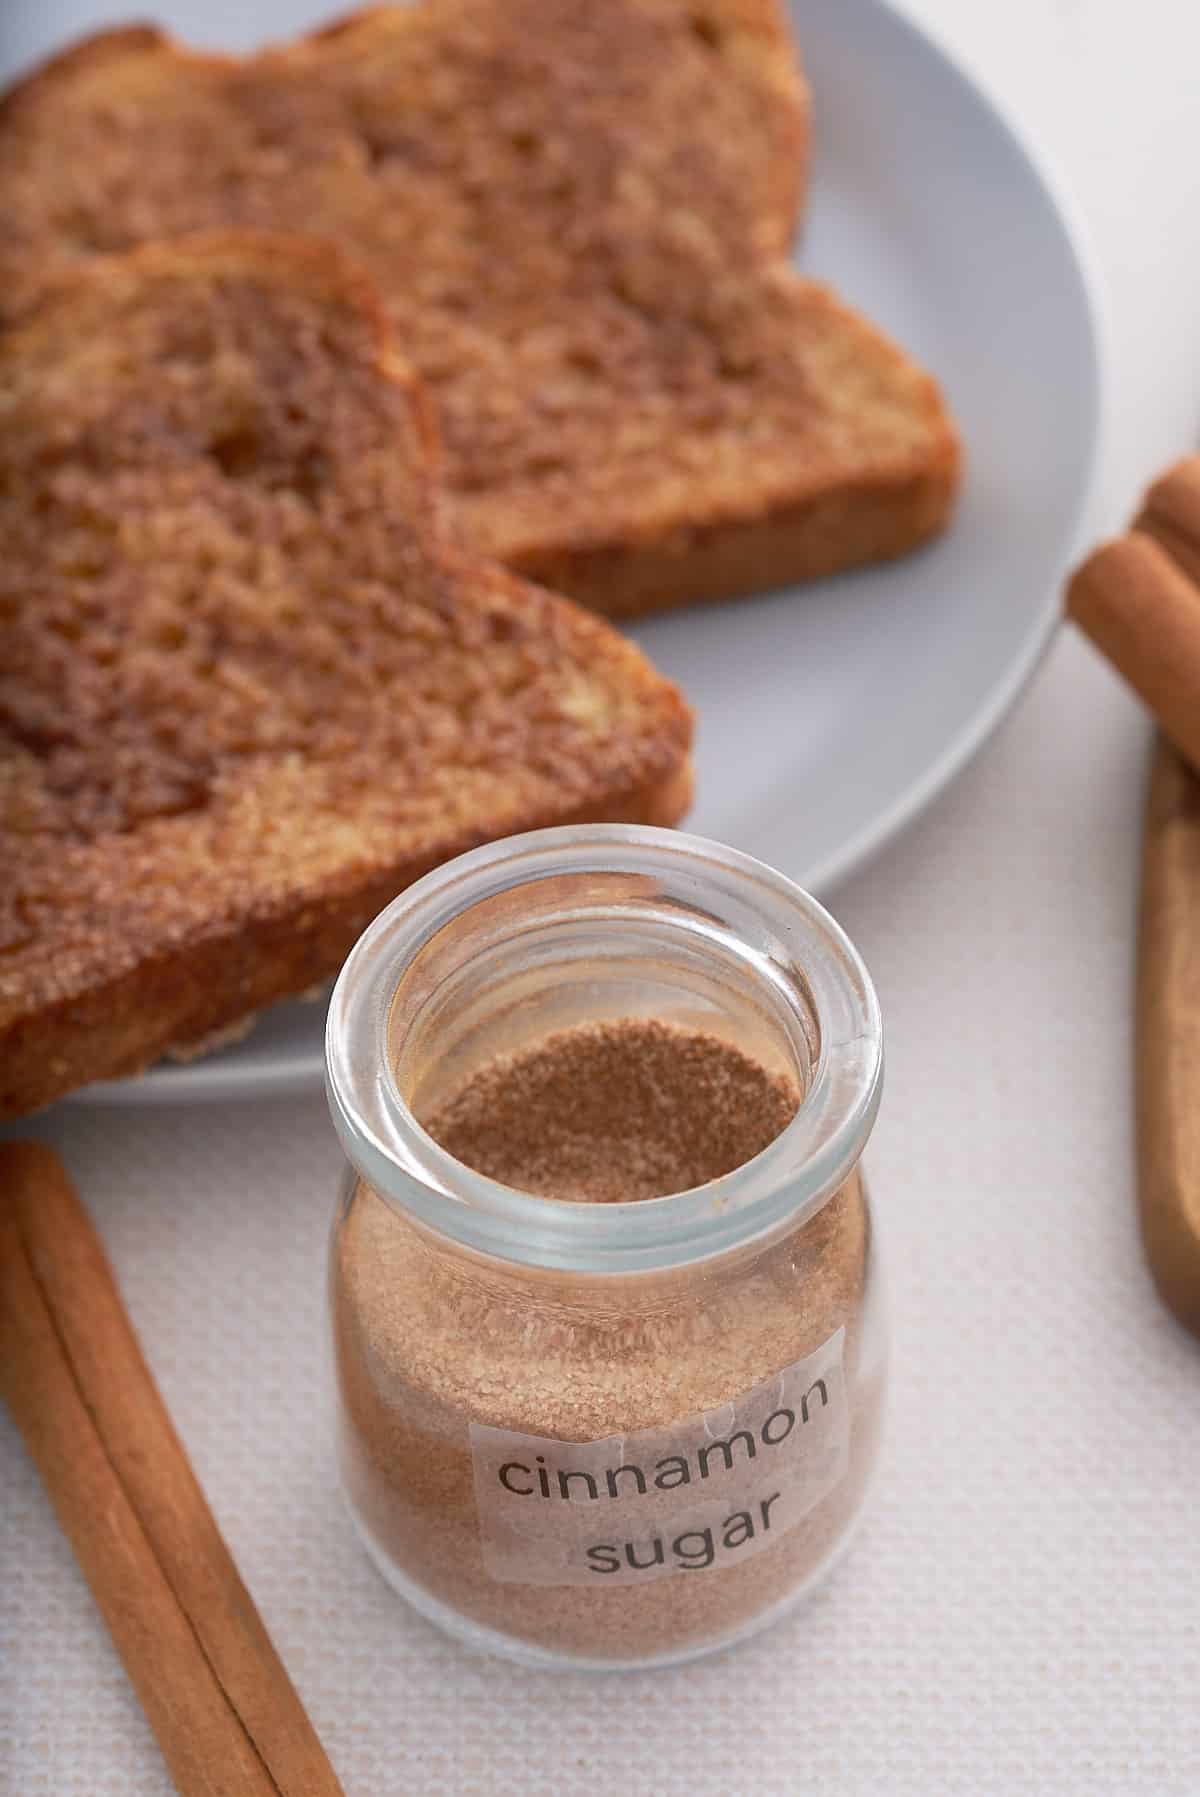 A labeled jar of cinnamon sugar with cinnamon toast set alongside.